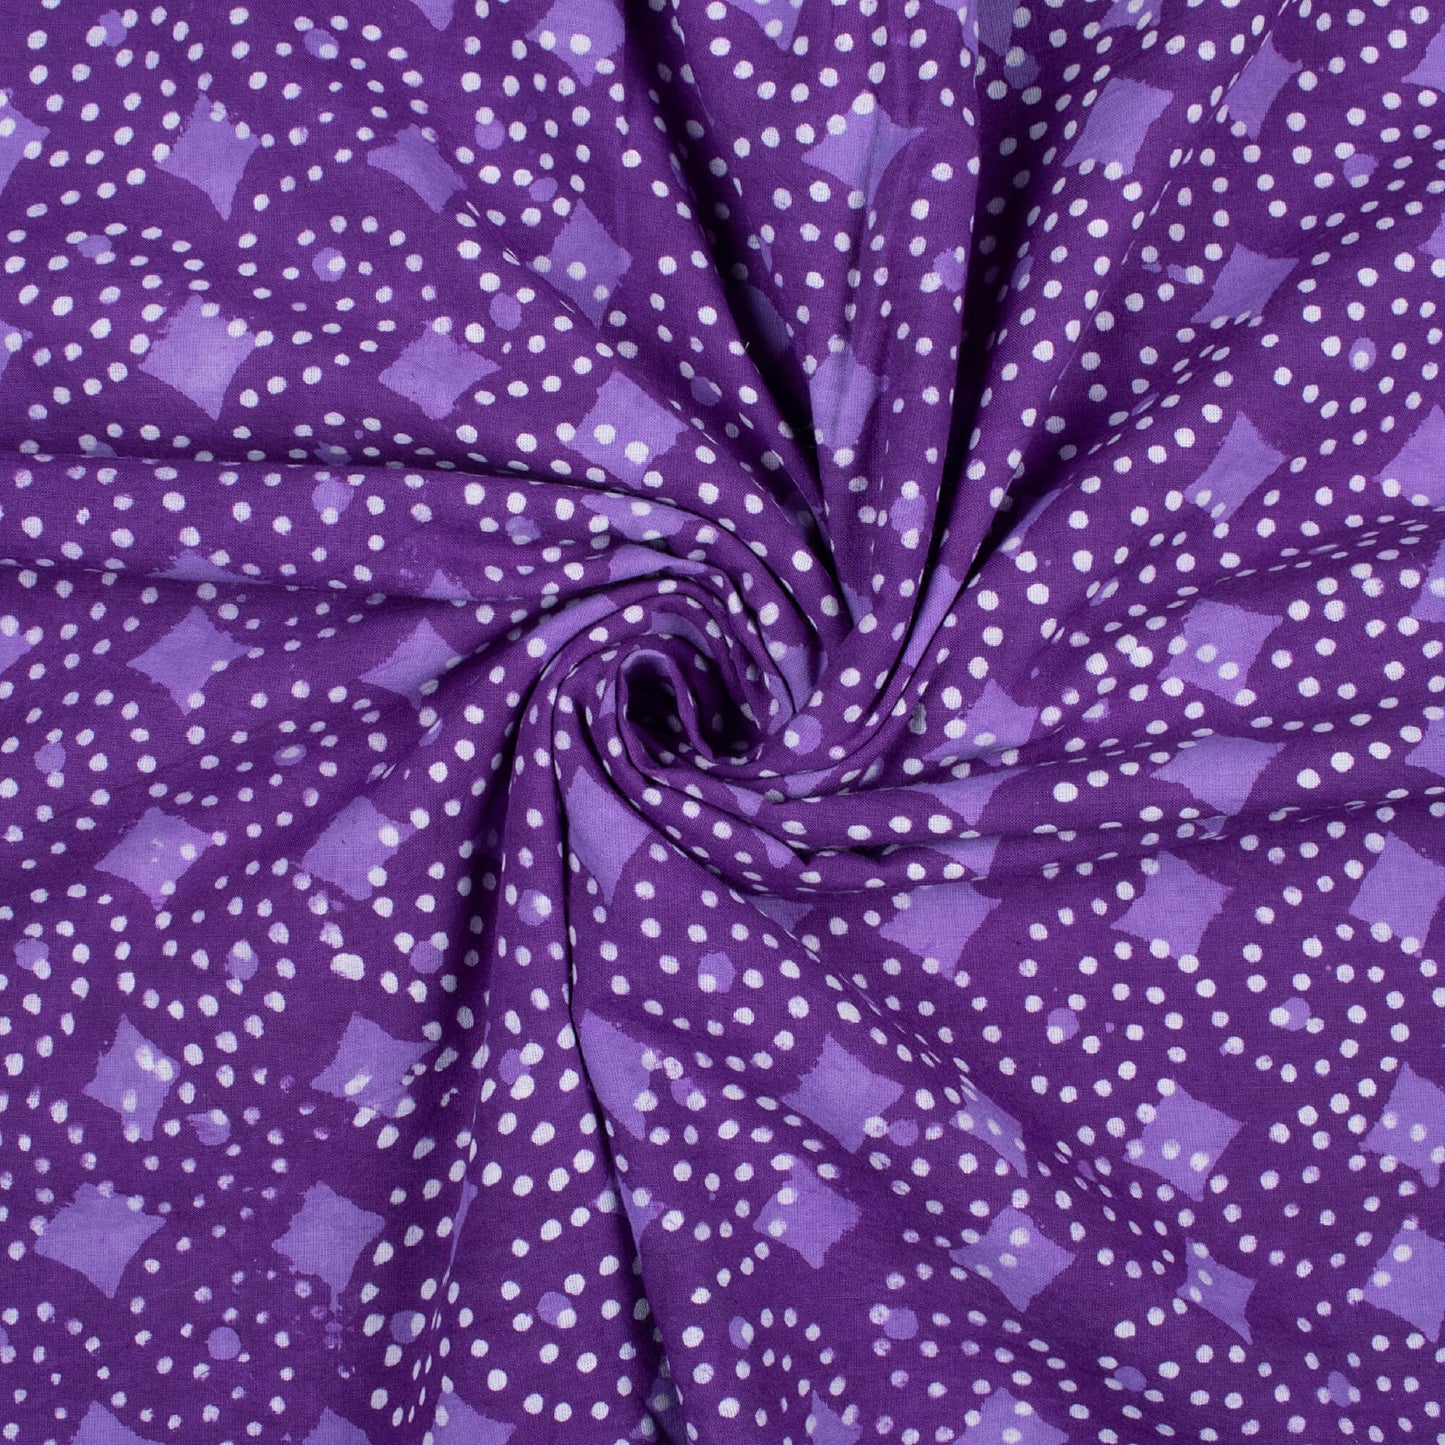 Grape Purple And White Traditional Pattern Bagru Dabu Handblock Cotton Fabric